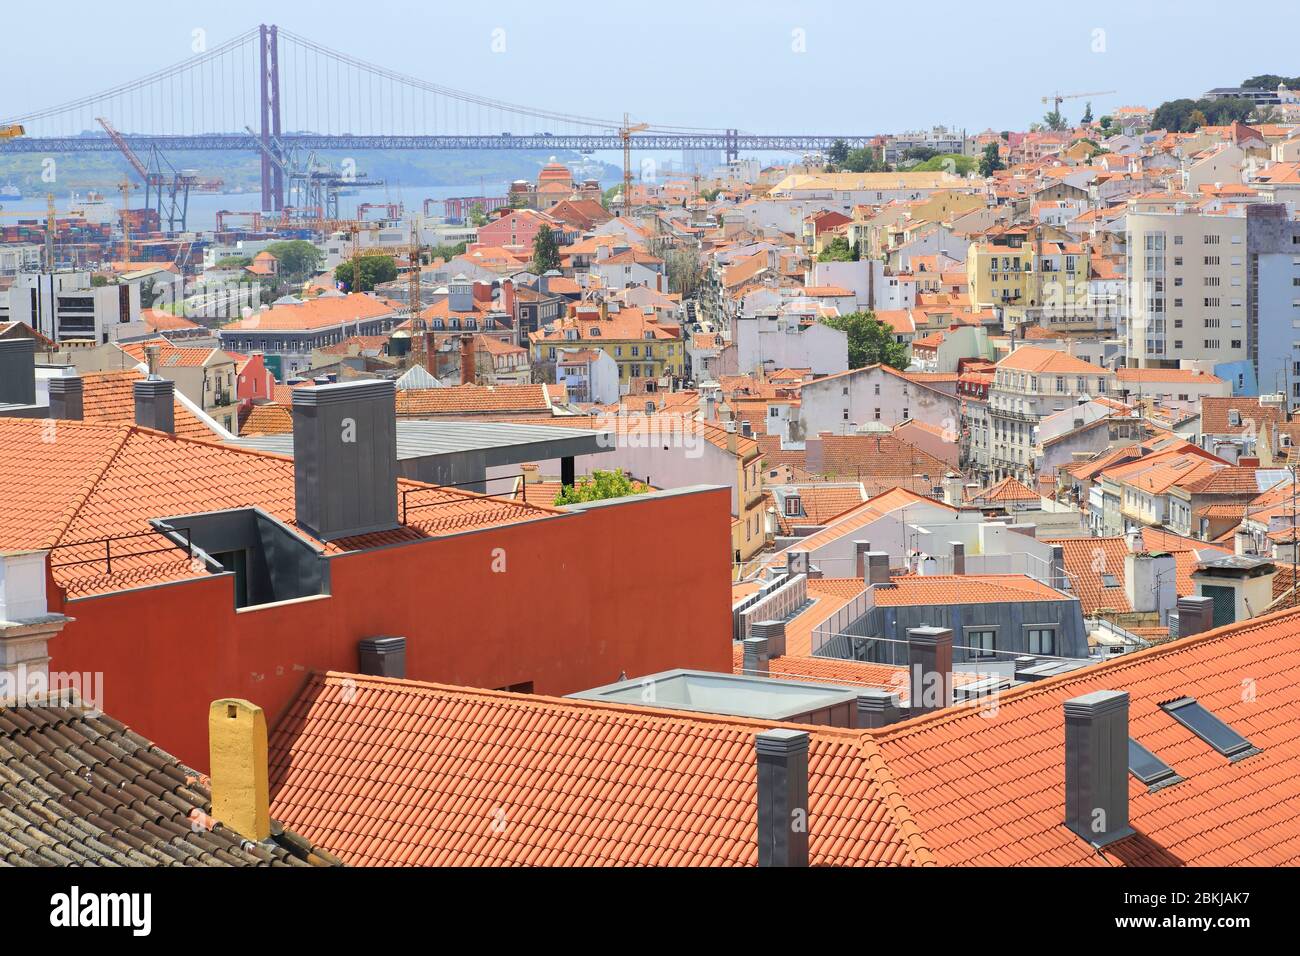 Portugal, Lisbonne, vue de Bairro Alto sur le quartier de Lapa avec le Tage et le pont du 25 avril en arrière-plan Banque D'Images